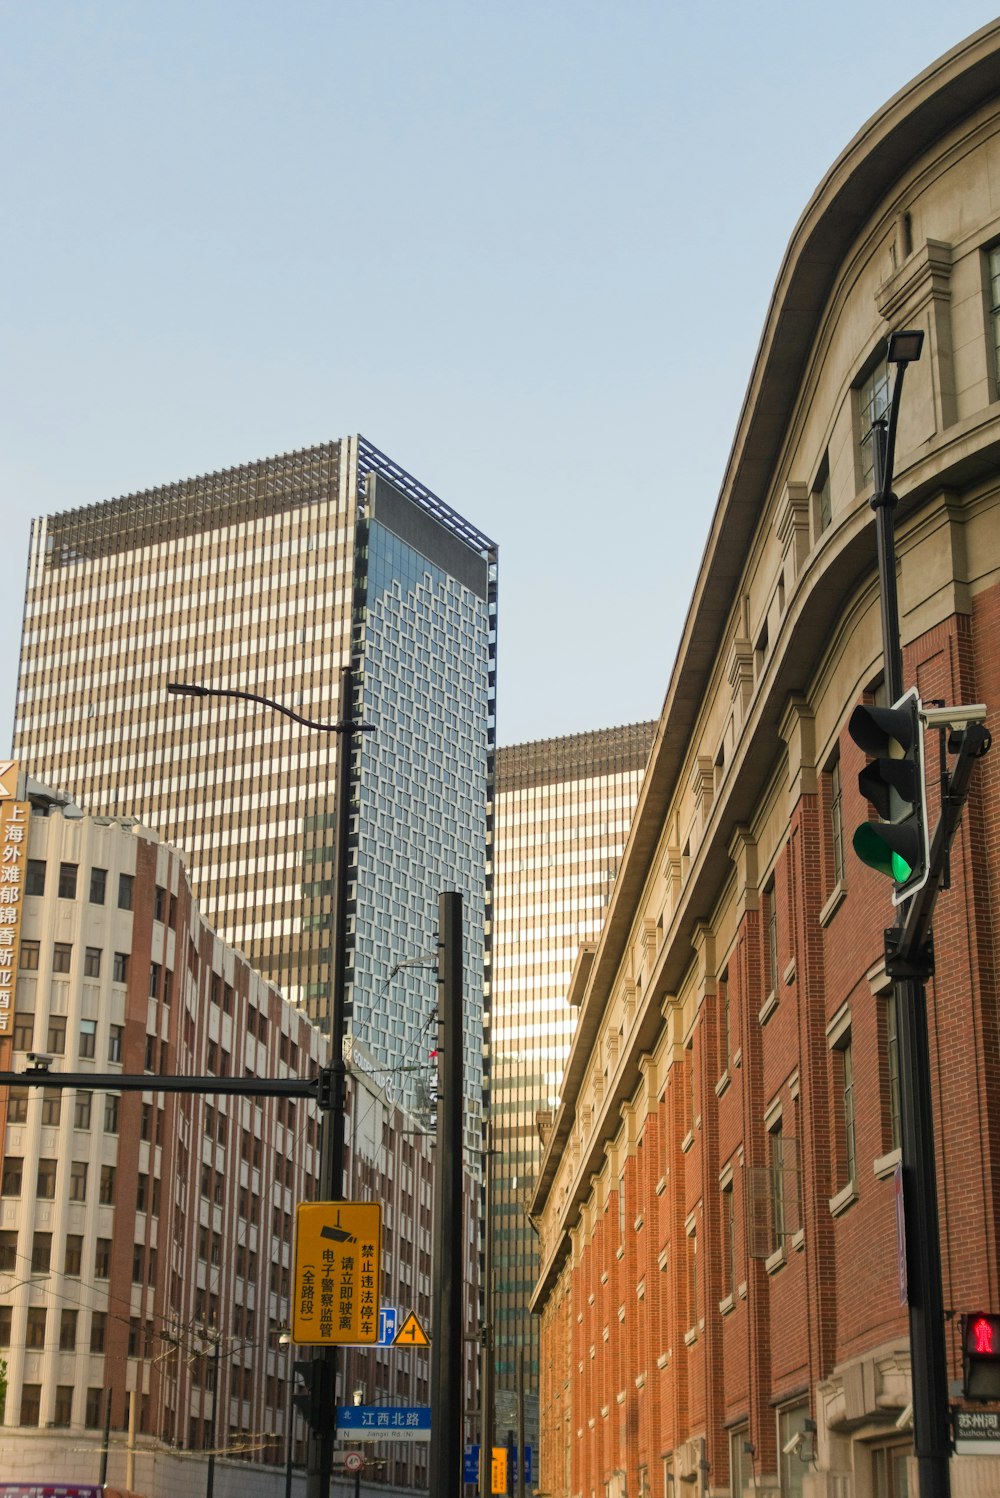 Un semáforo en una calle de la ciudad junto a edificios altos